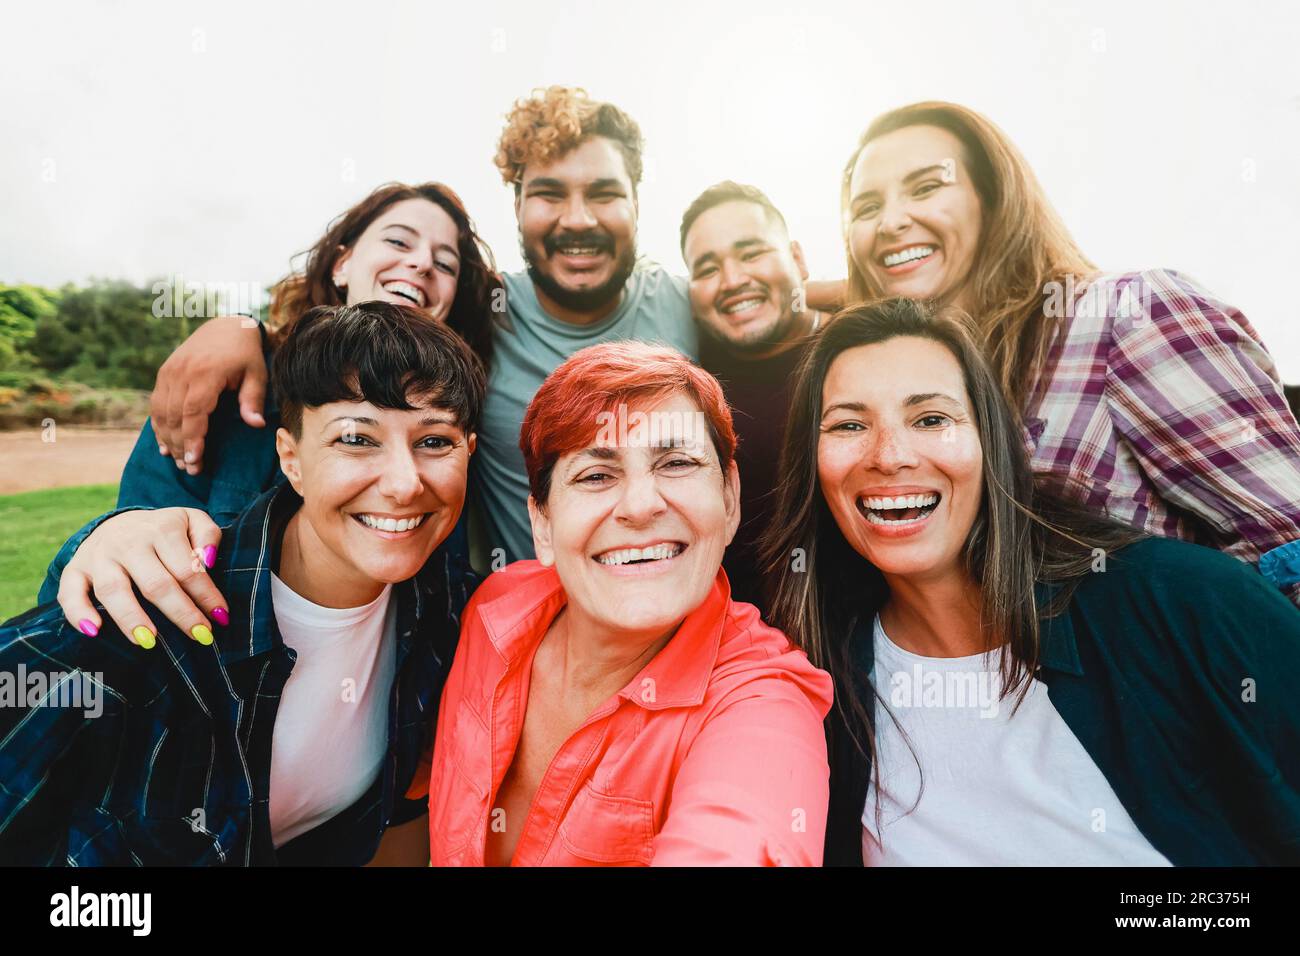 Generationenübergreifende Selfie-Selfie draußen - glückliche Gruppe von Freunden, die gemeinsam Spaß im Park City haben - Freundschaft und Vielfalt Gemeinschaft Stockfoto